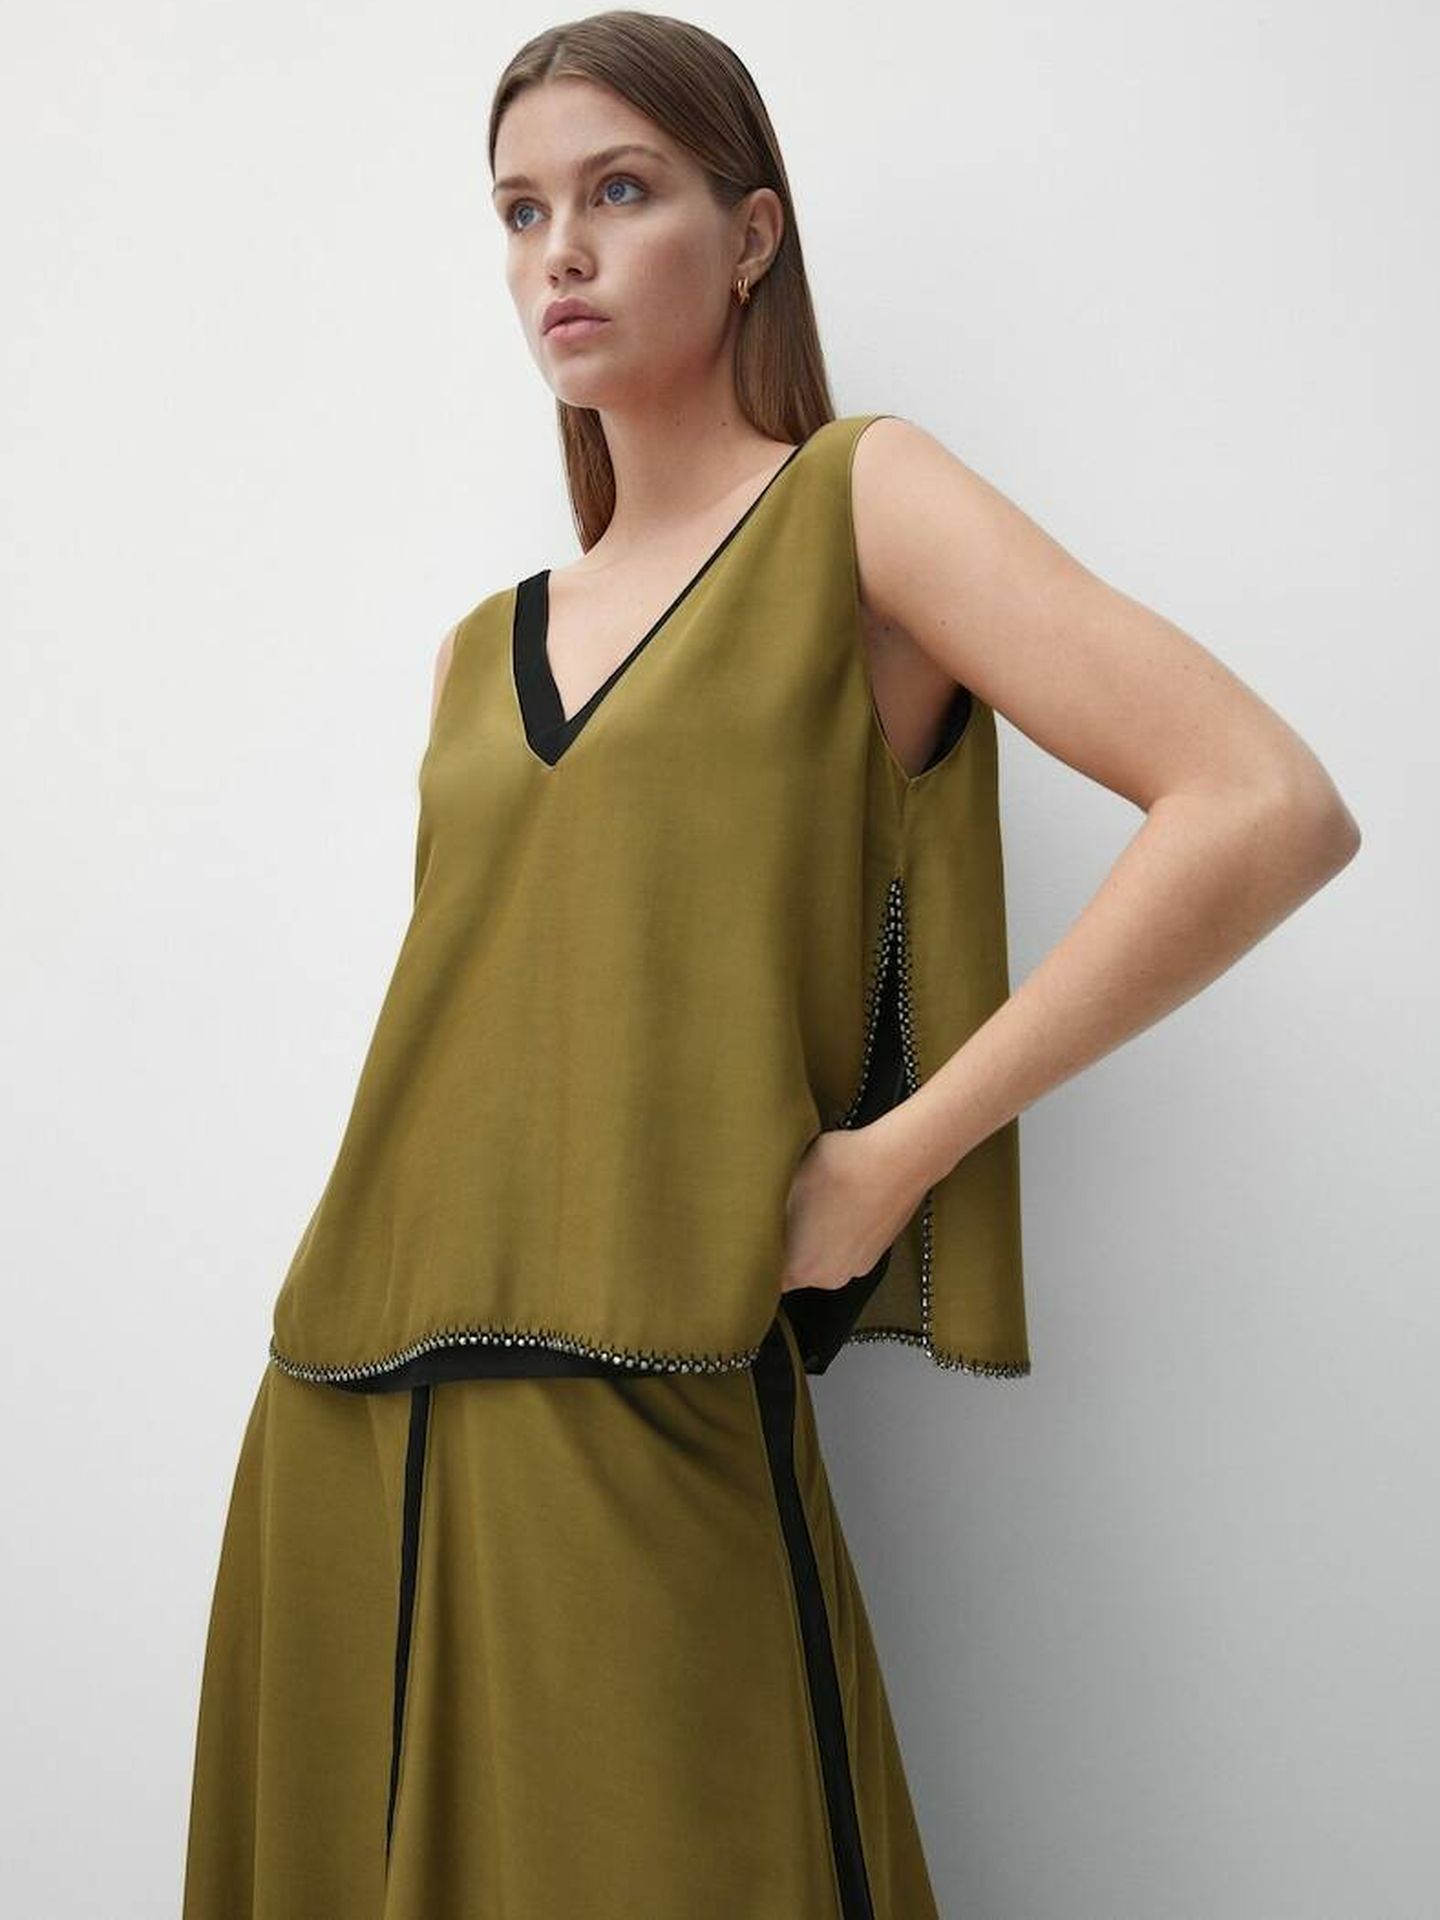 Falda verde de moda. (Massimo Dutti/Cortesía)